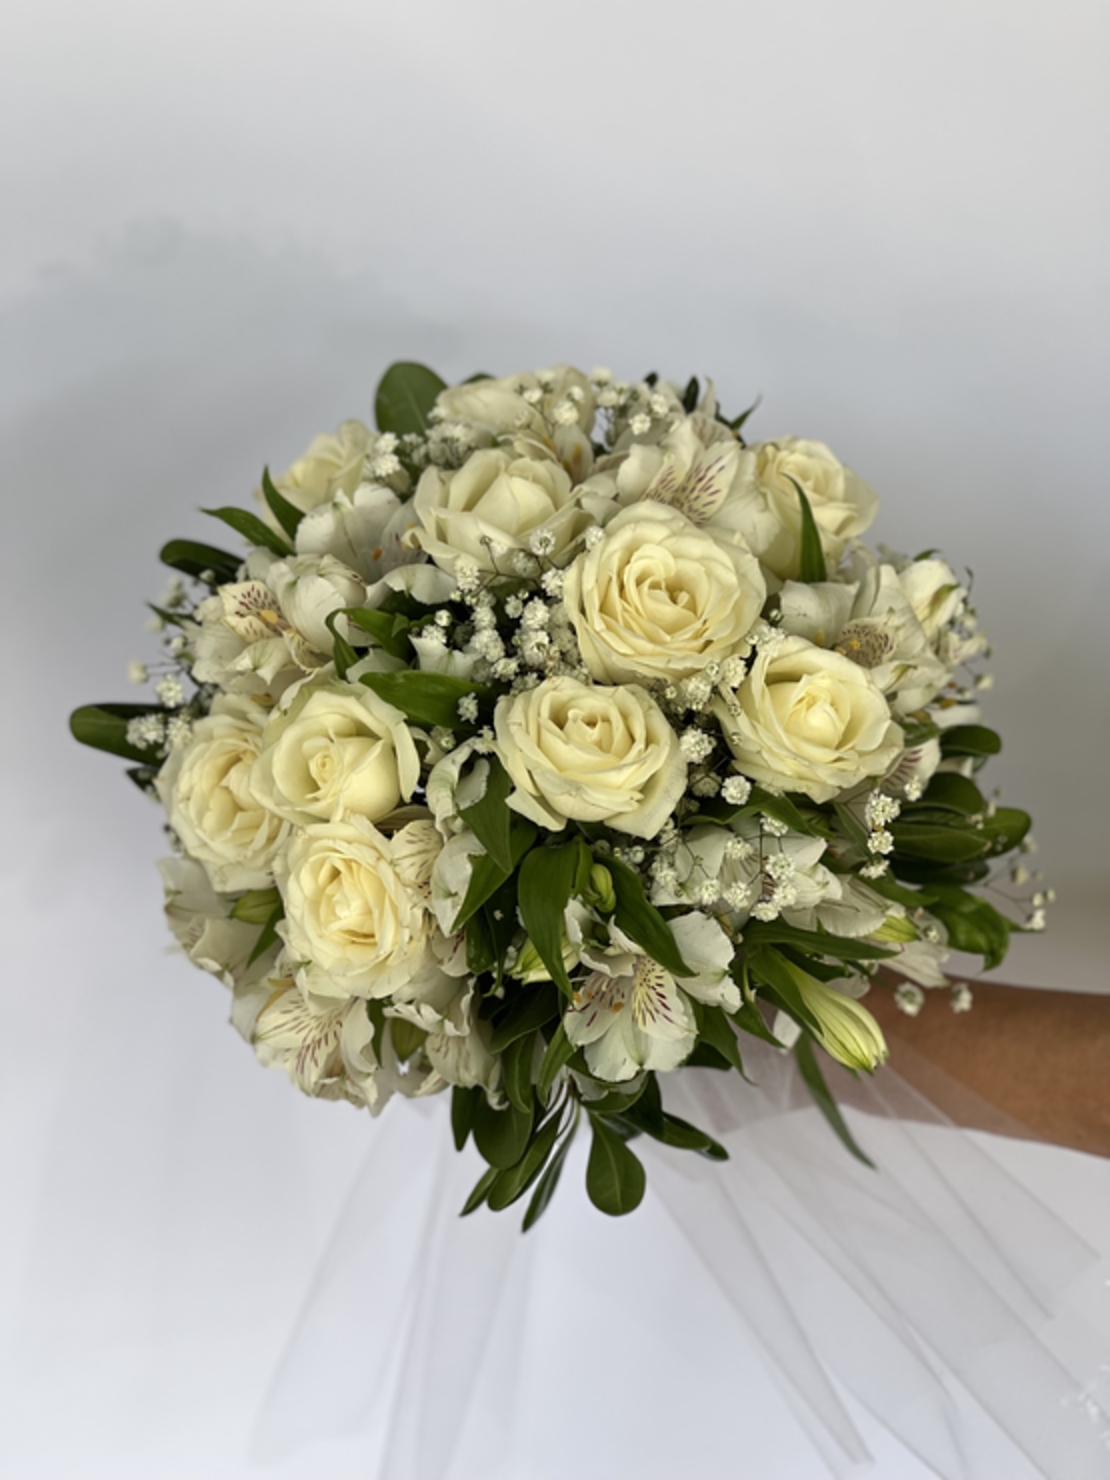 Michal bridal bouquet